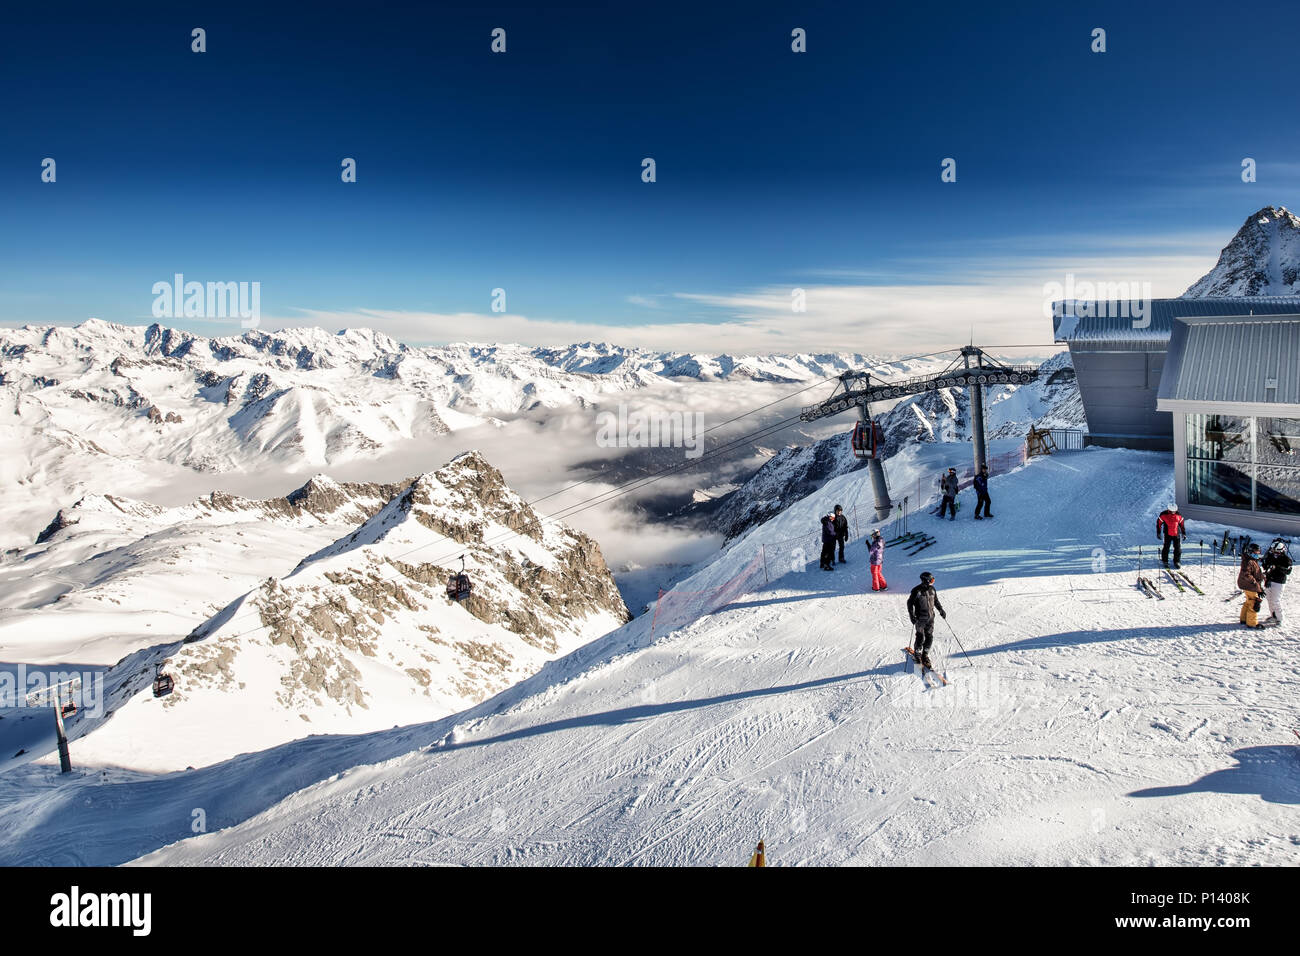 TONALE, Italien - 20 Jan, 2018 - Beeindruckende winter Panorama in Tonale Skigebiet. Mit der Italienischen Alpen von Adamelo Gletscher, Italia, Europa. Stockfoto